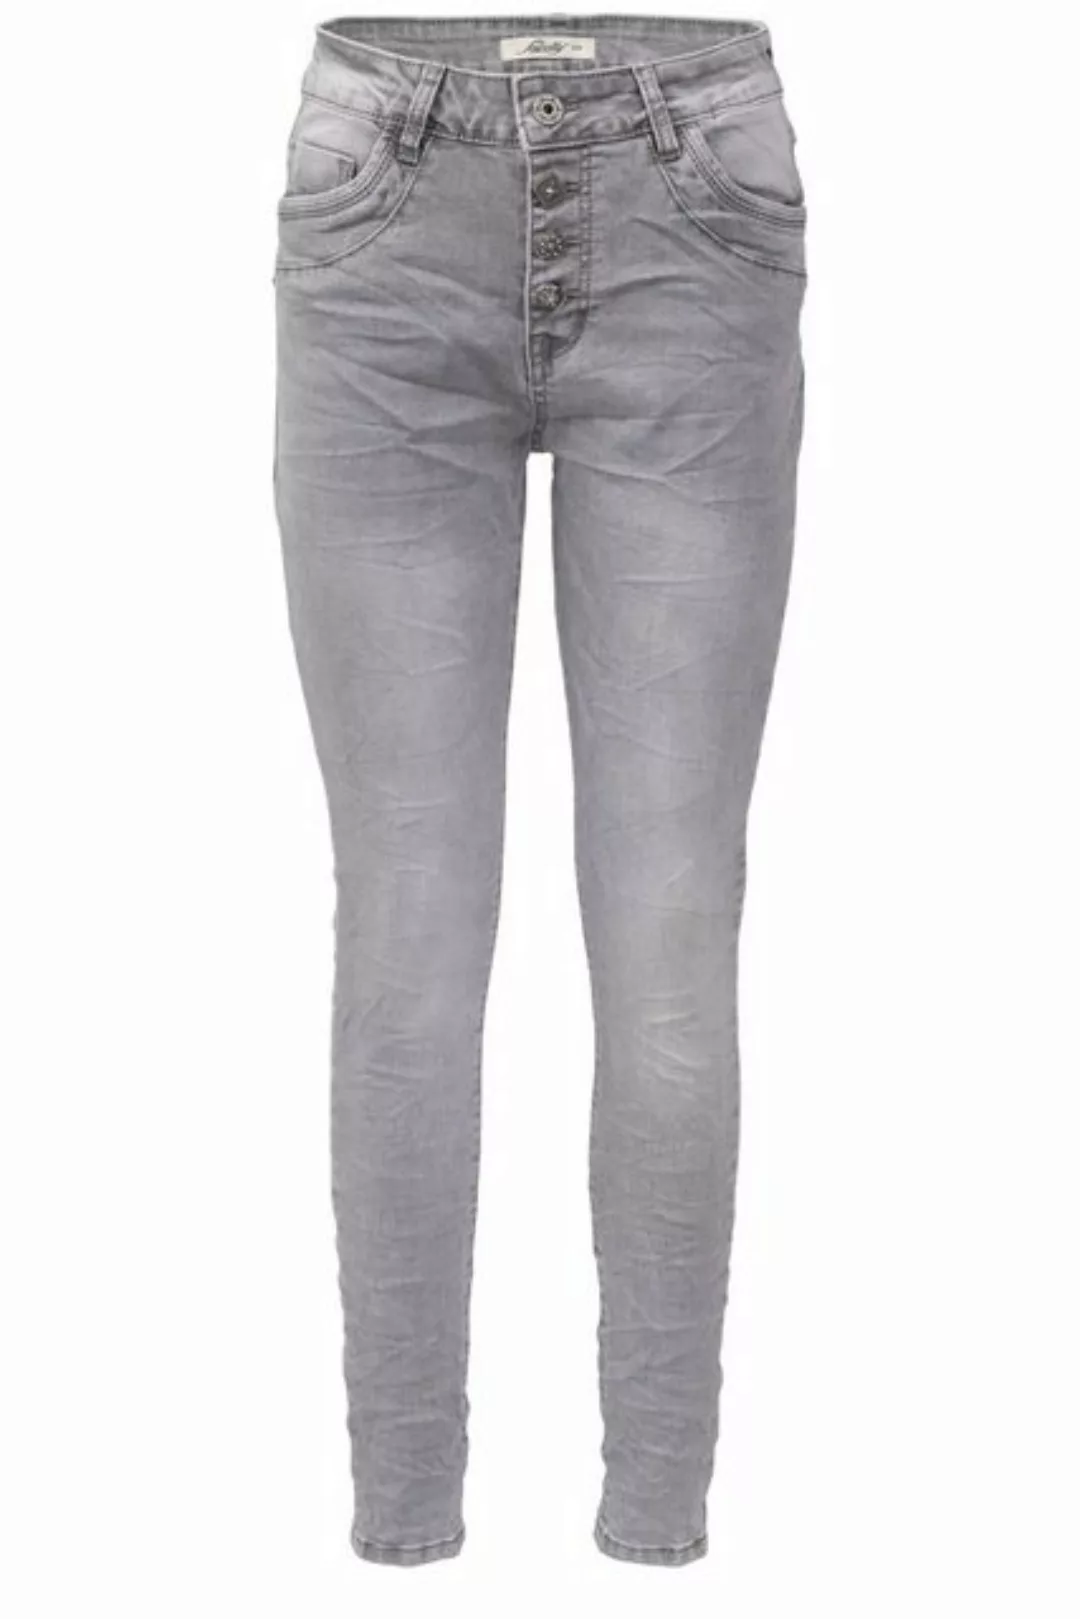 Jewelly Regular-fit-Jeans Jeans mit Crash Optik Grau, Boyfriend Schnitt günstig online kaufen